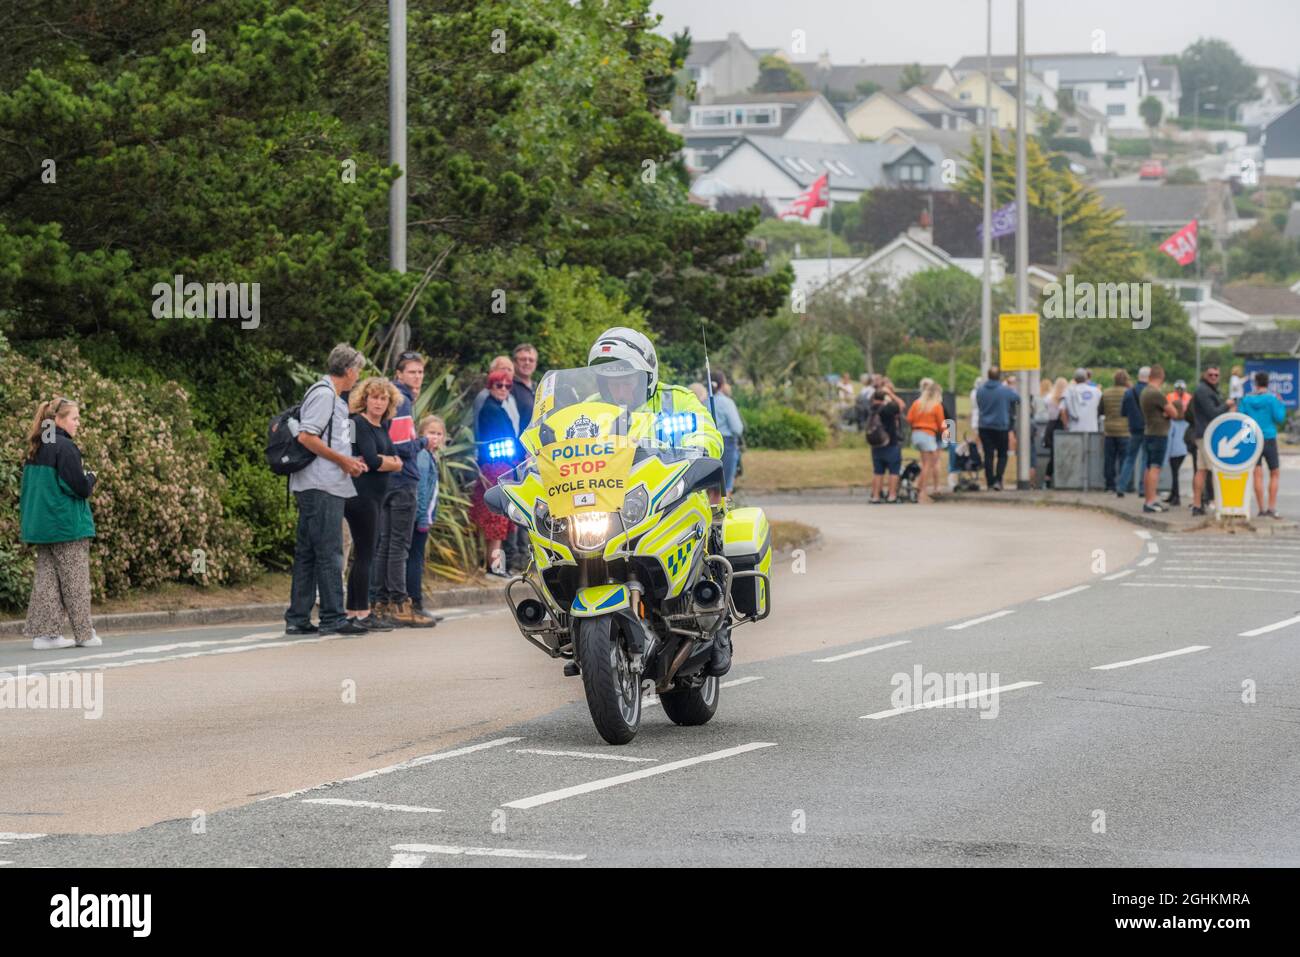 Un motocycliste de patrouille polique qui se rendit à Newquay, dans les Cornouailles, au cours de l'étape d'ouverture de l'emblématique Tour de Grande-Bretagne 2021, connu sous le nom de Grand départ. Banque D'Images